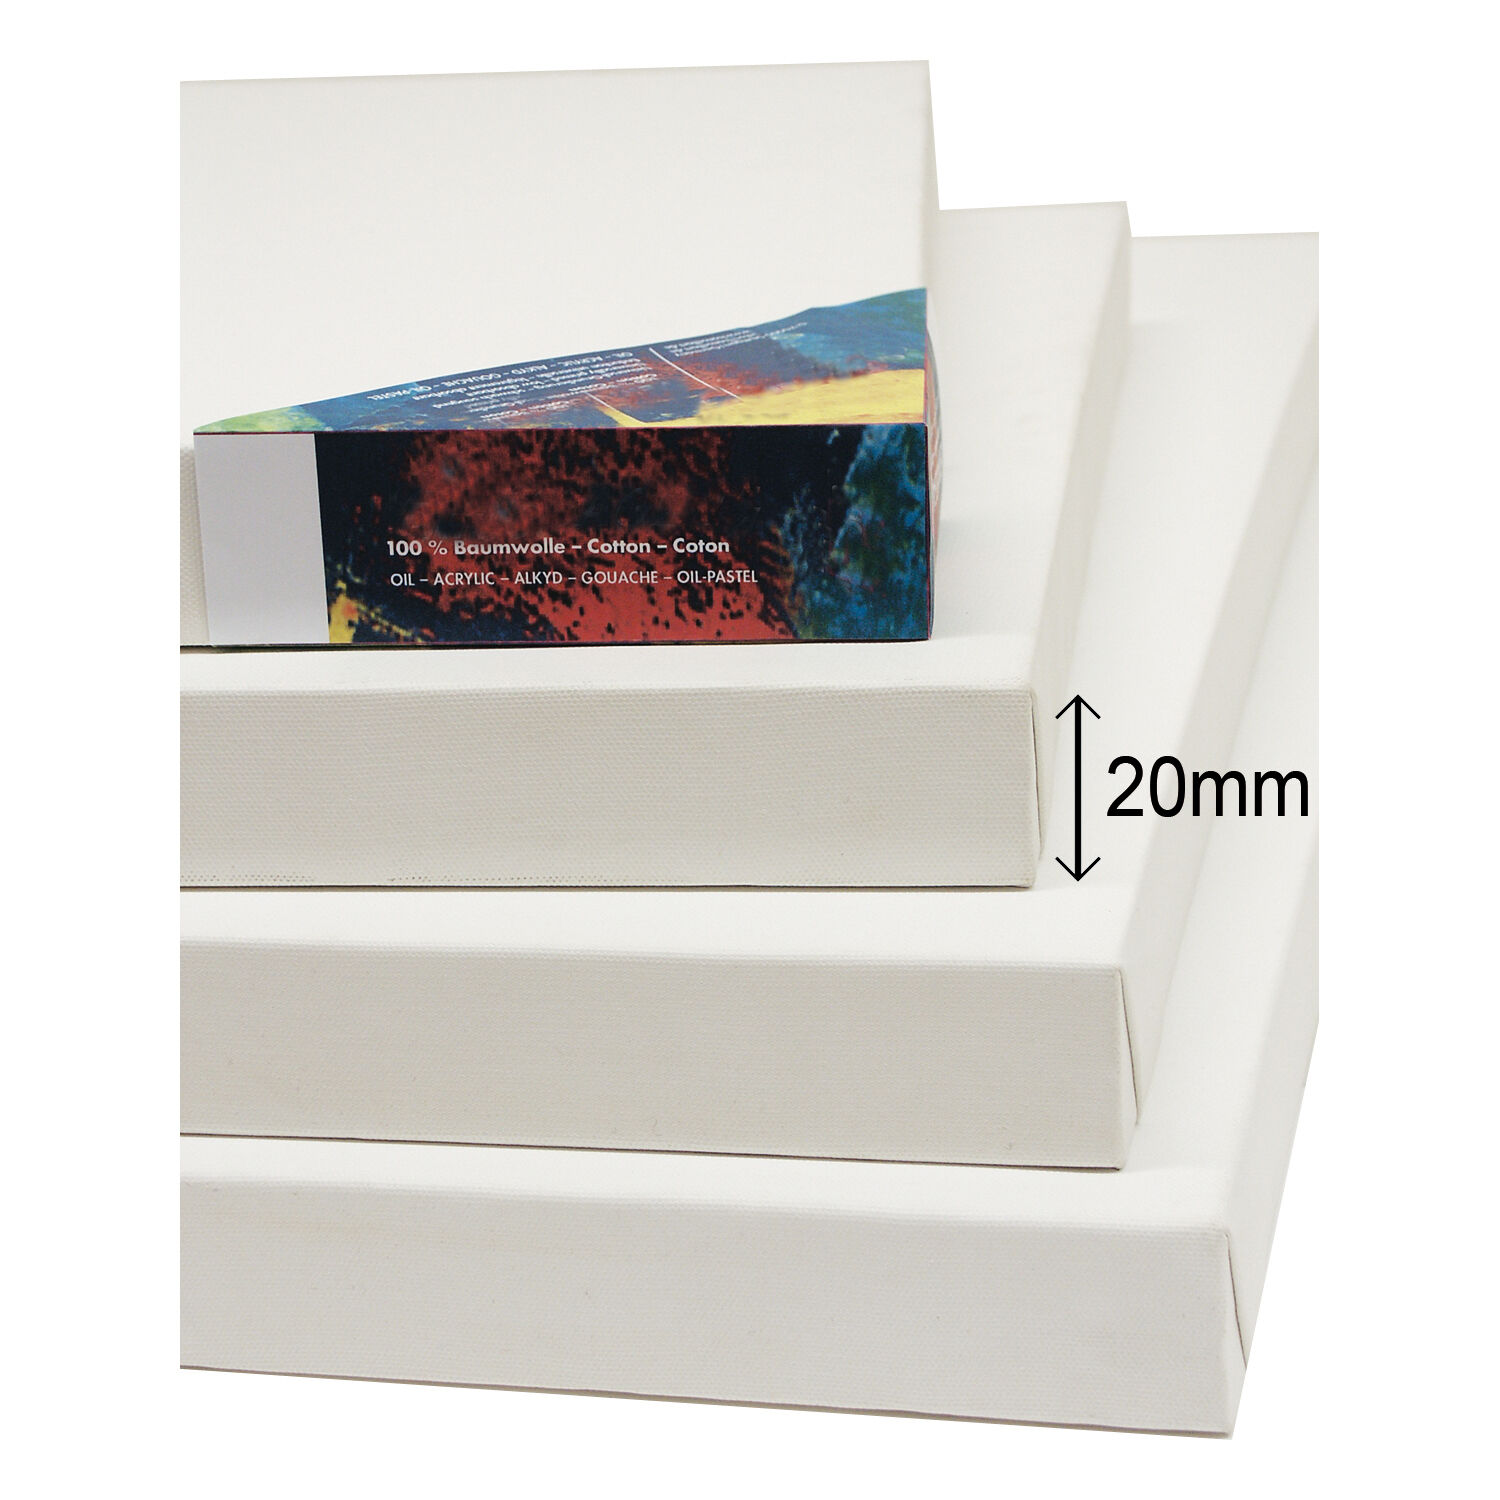 NEU Cotton 400 Premium-Keilrahmen Professionell 20mm Leistenstärke, 30 x 30 cm - 2 Stück